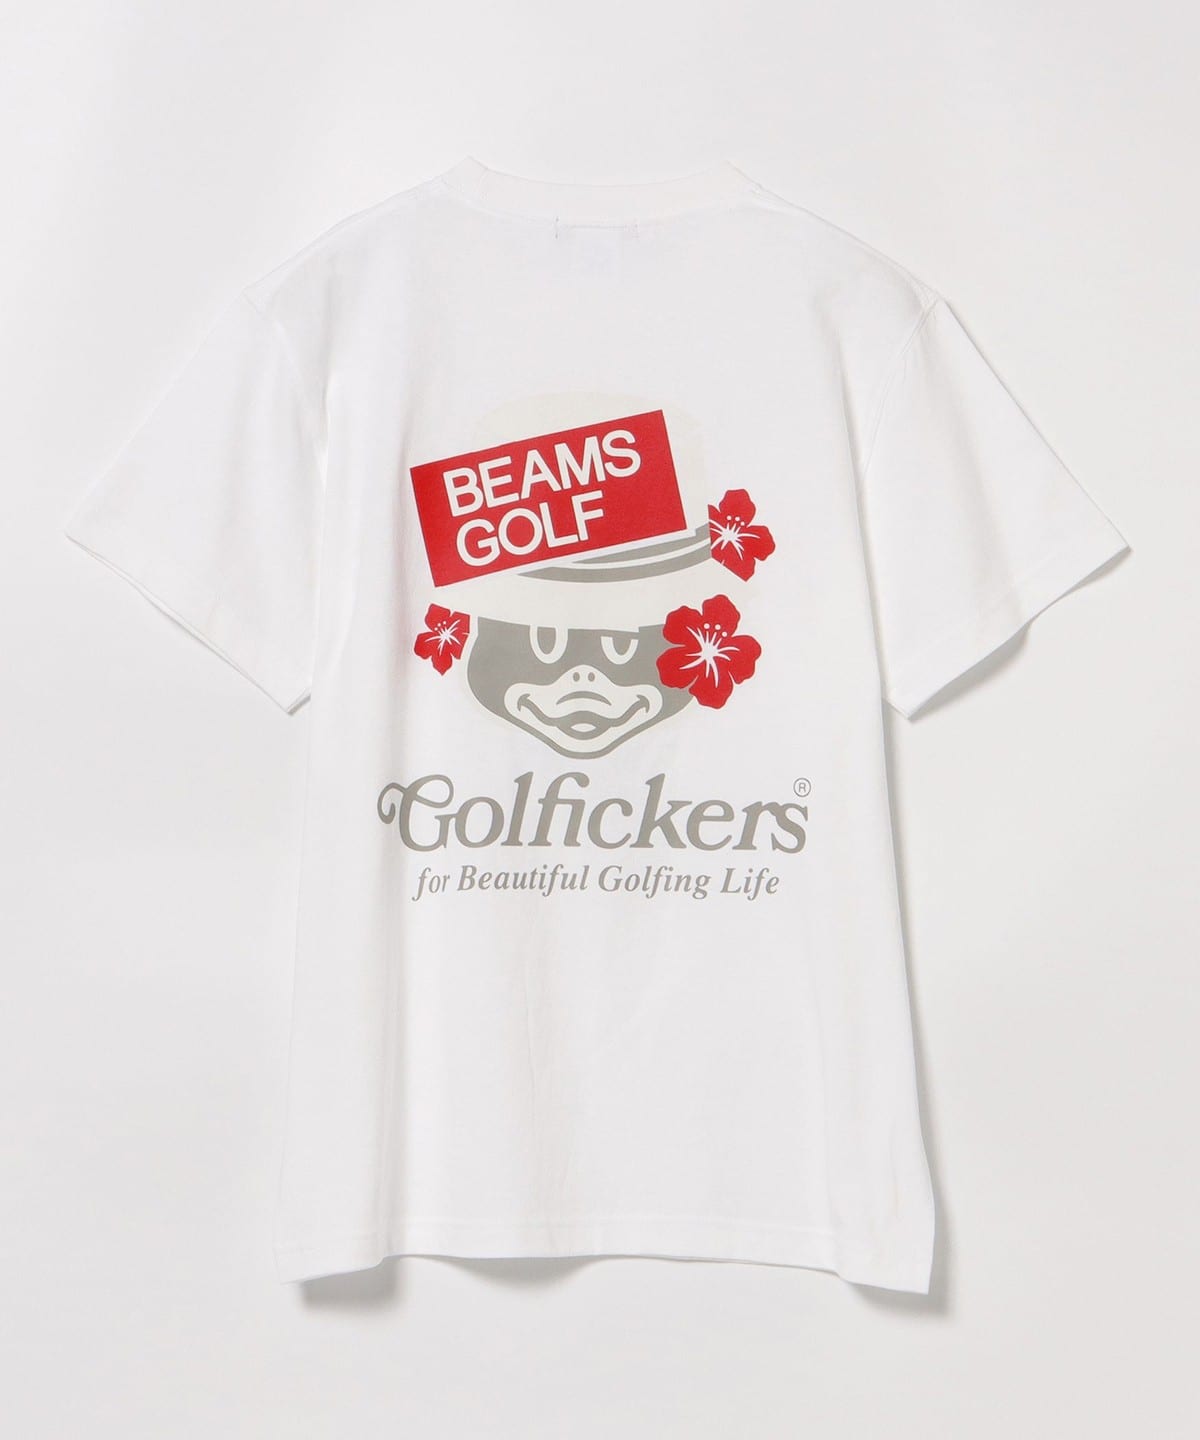 6,232円golfickers ✖️ beams golf コラボTシャツ